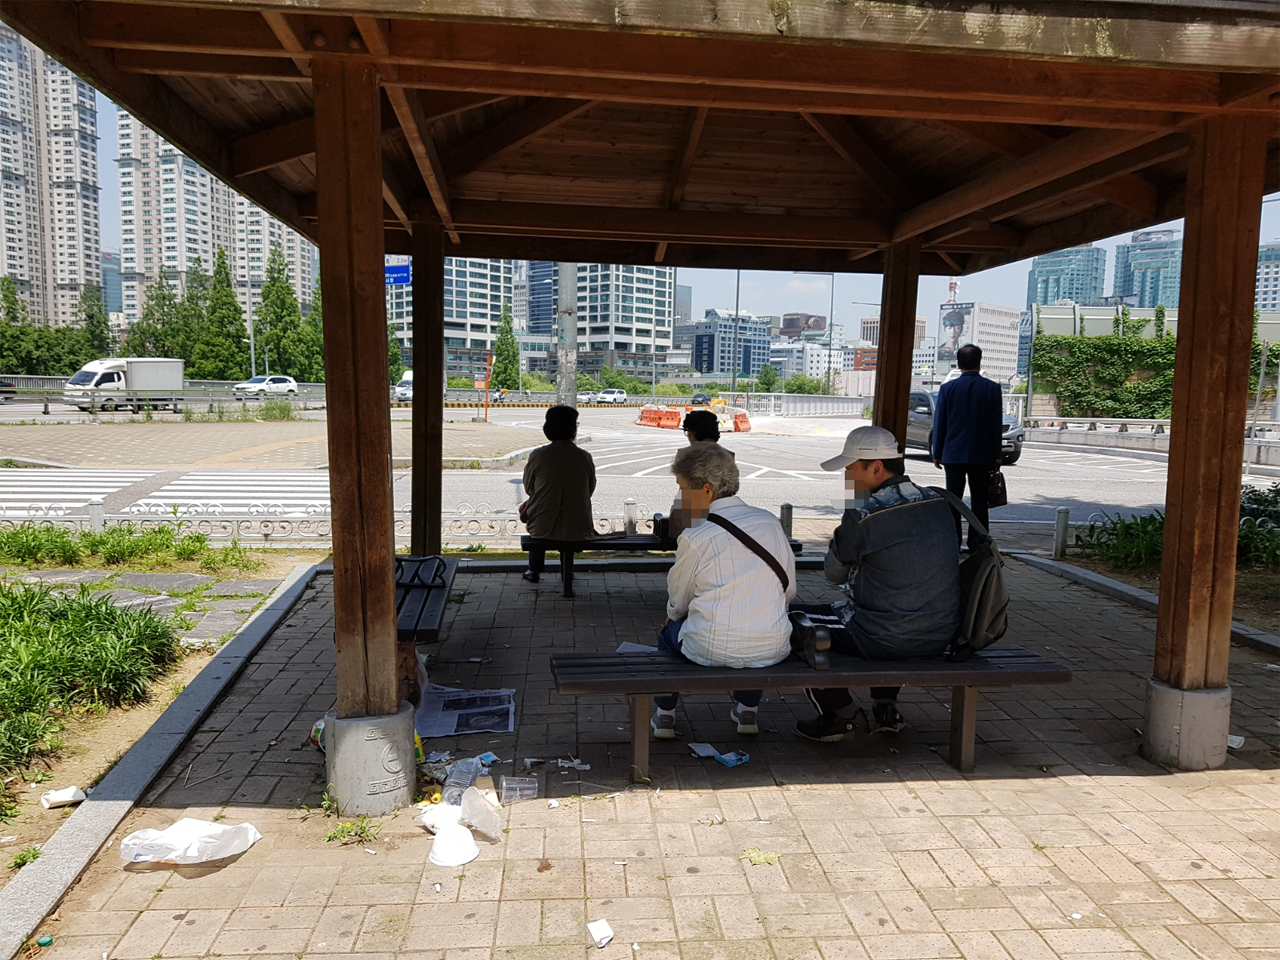 쉼터의 벤치에 앉은 두 시민이 주변에 널려 있는 쓰레기를 바라보고 있다.